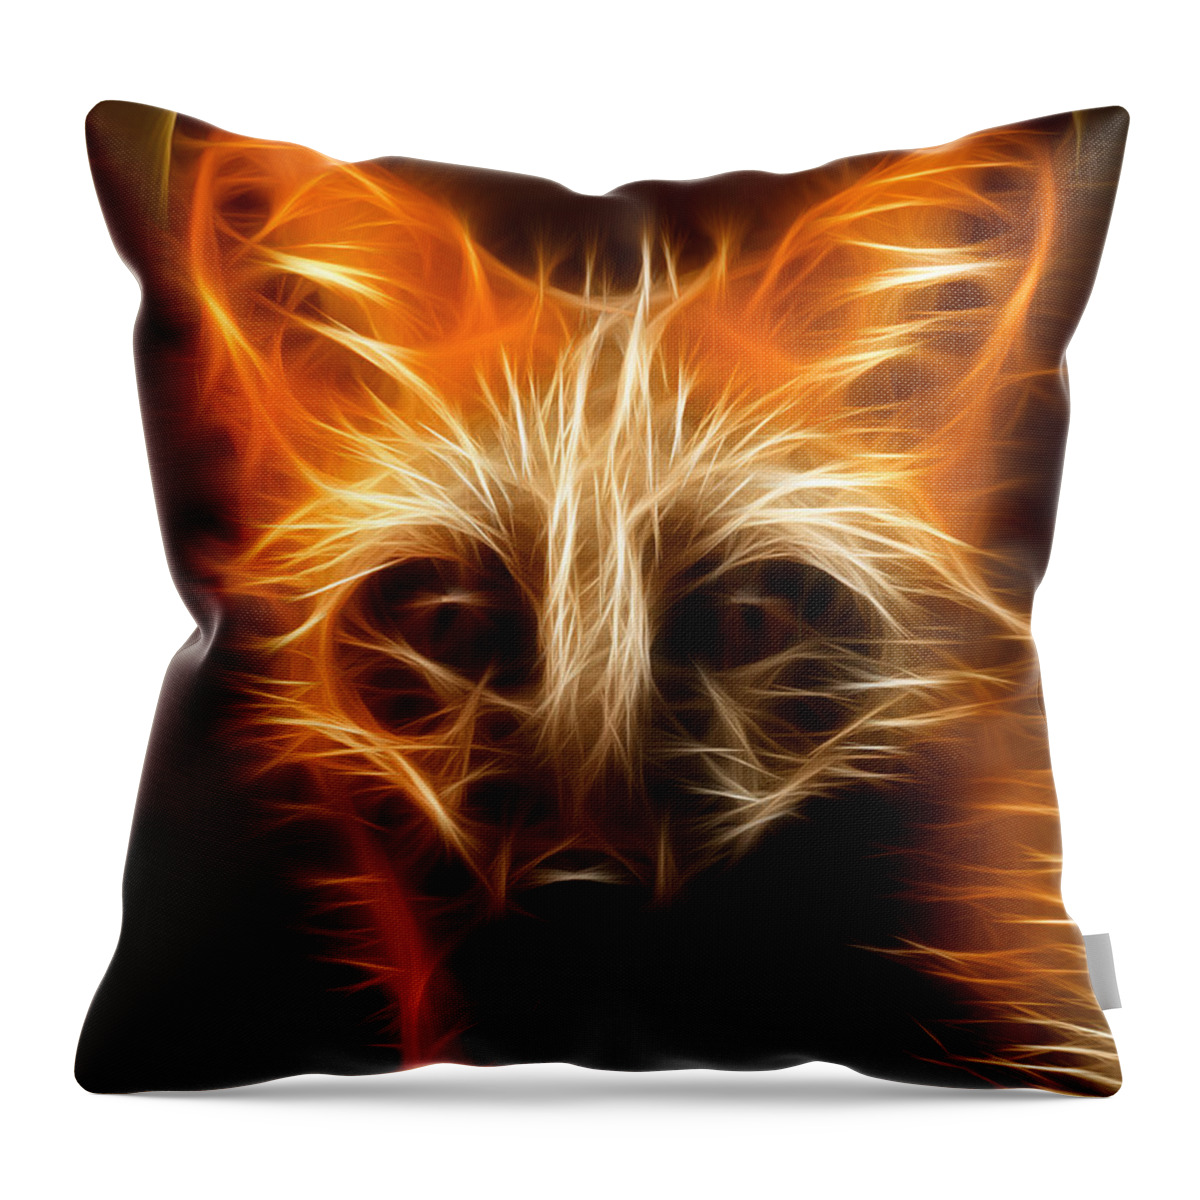 Fox Throw Pillow featuring the photograph Fractal Fox by Wade Aiken